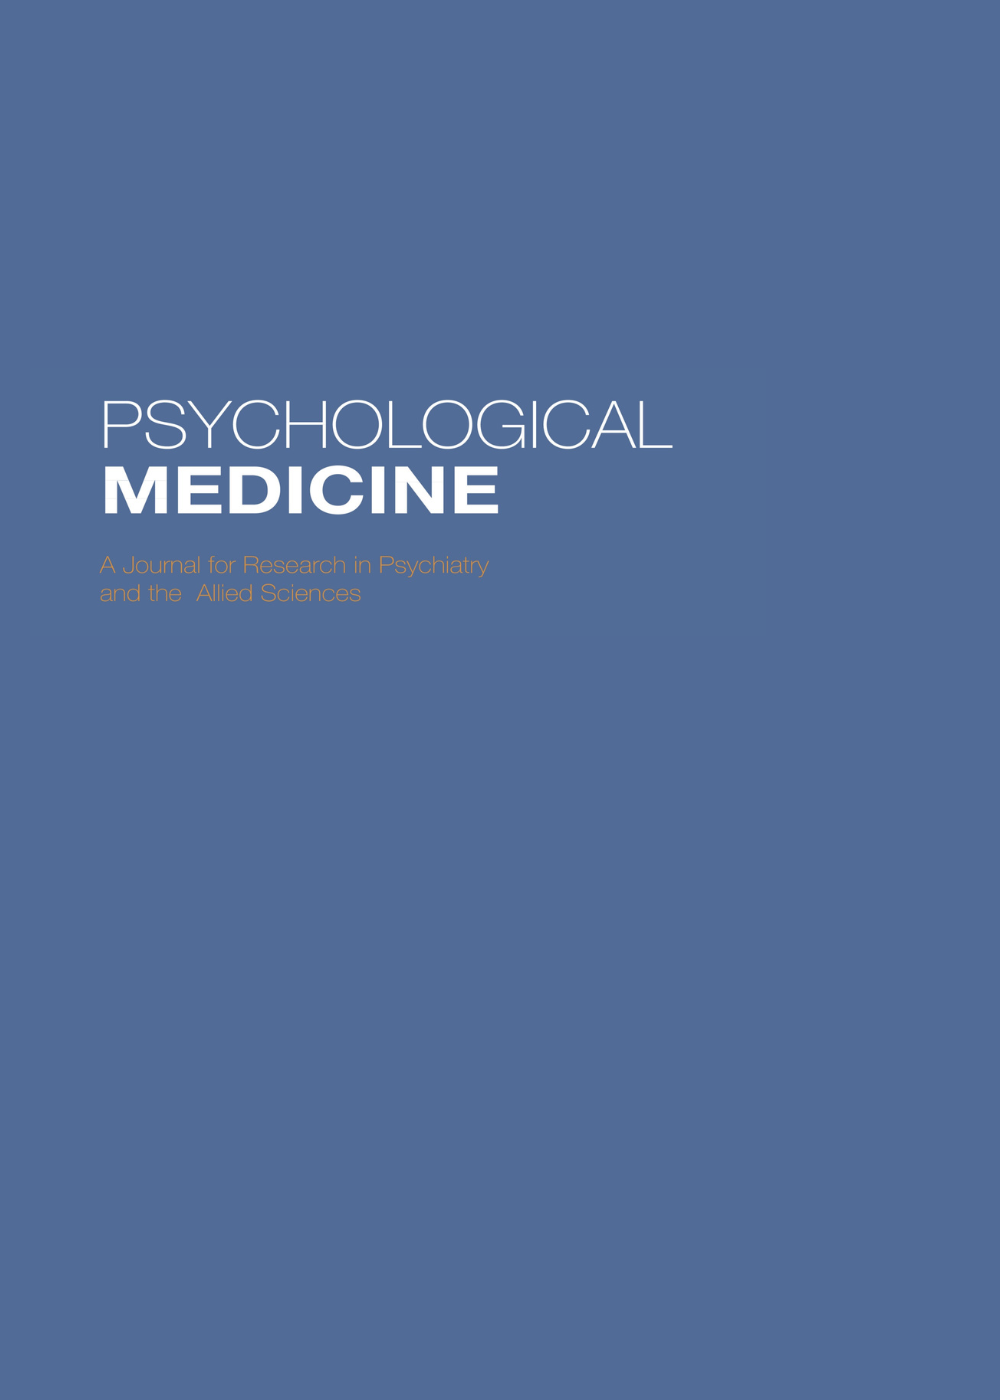 Psychological Medicine